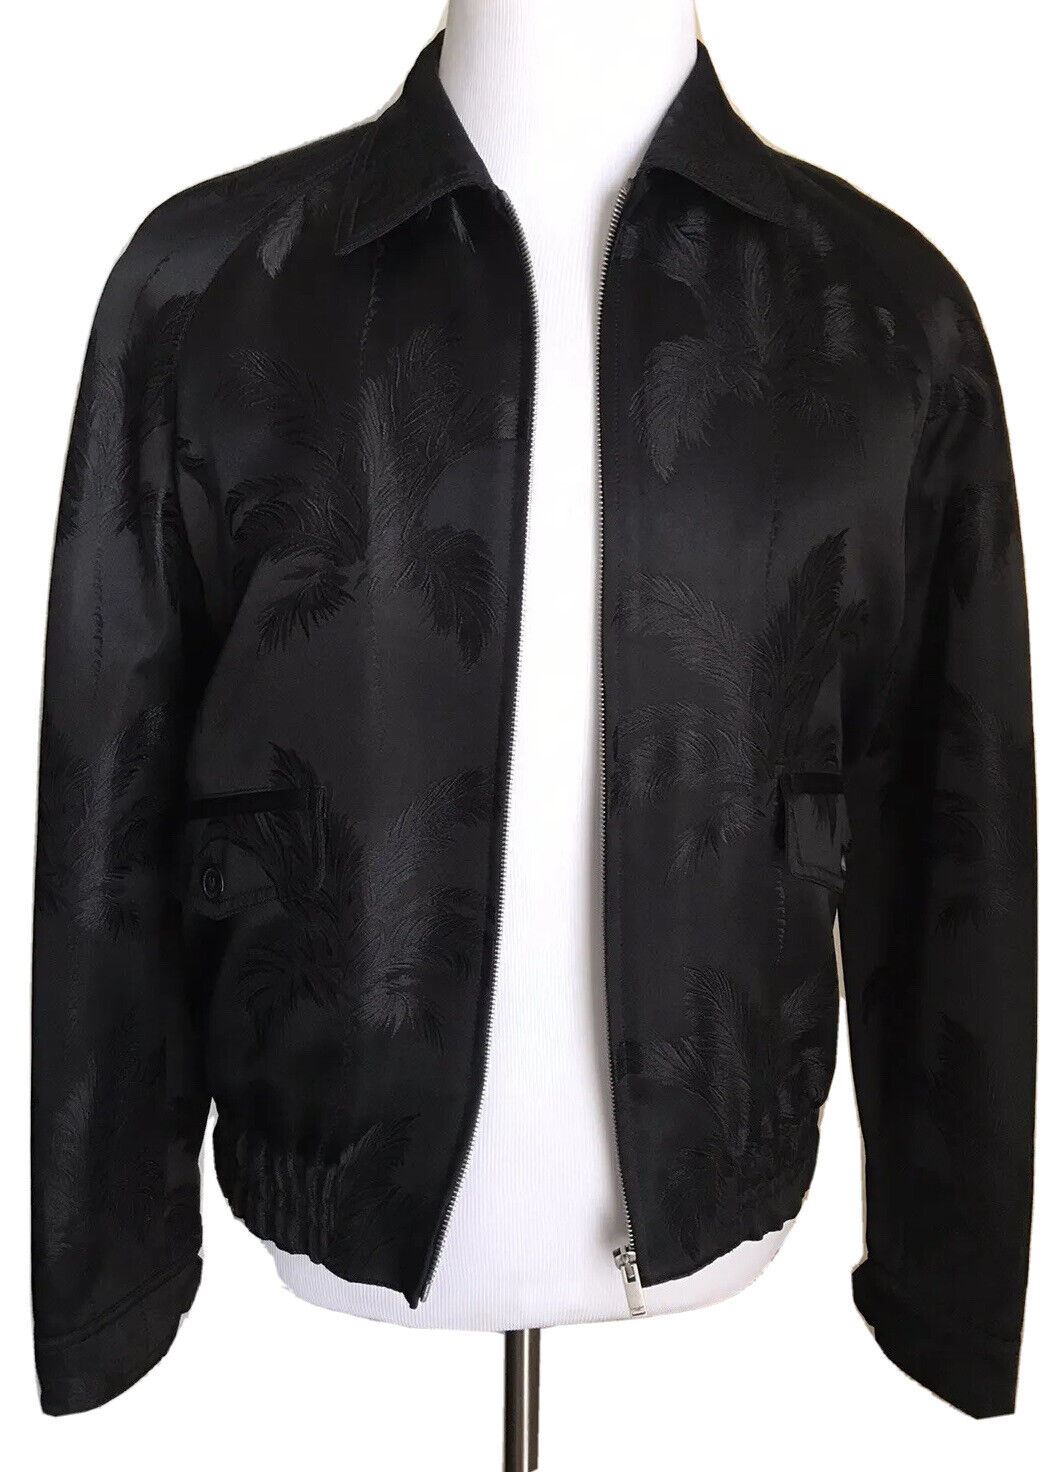 Новая куртка реглан на молнии Saint Laurent за 2690 долларов, черное пальто 40 США (50 ЕС) Италия